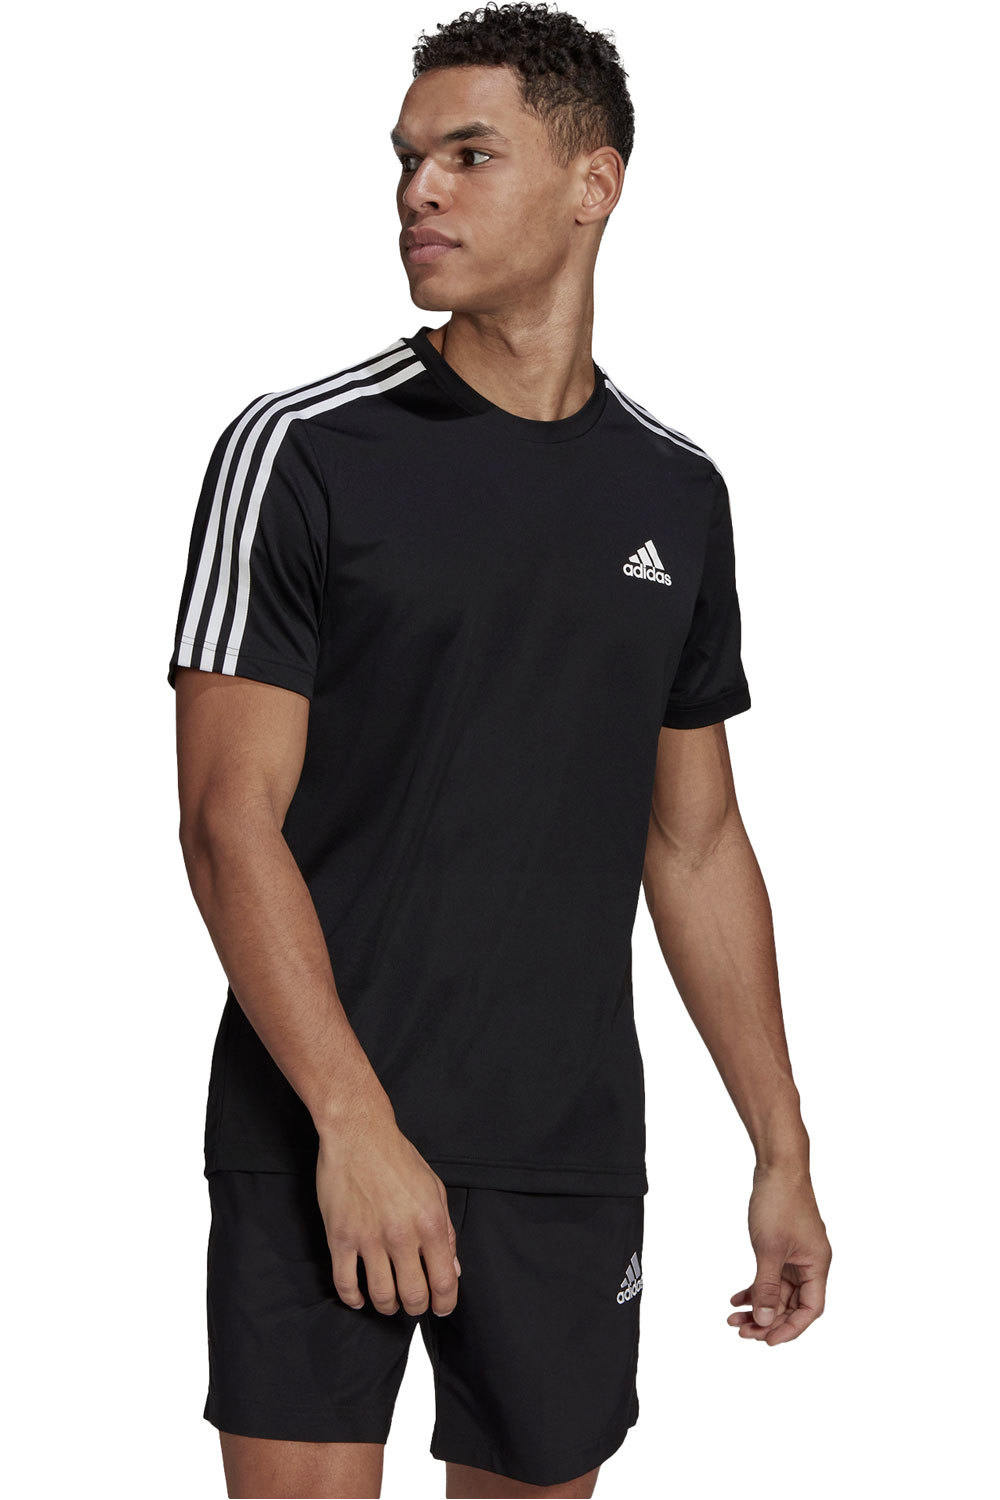 adidas camiseta fitness hombre AEROREADY Designed To Move Sport 3 bandas vista frontal